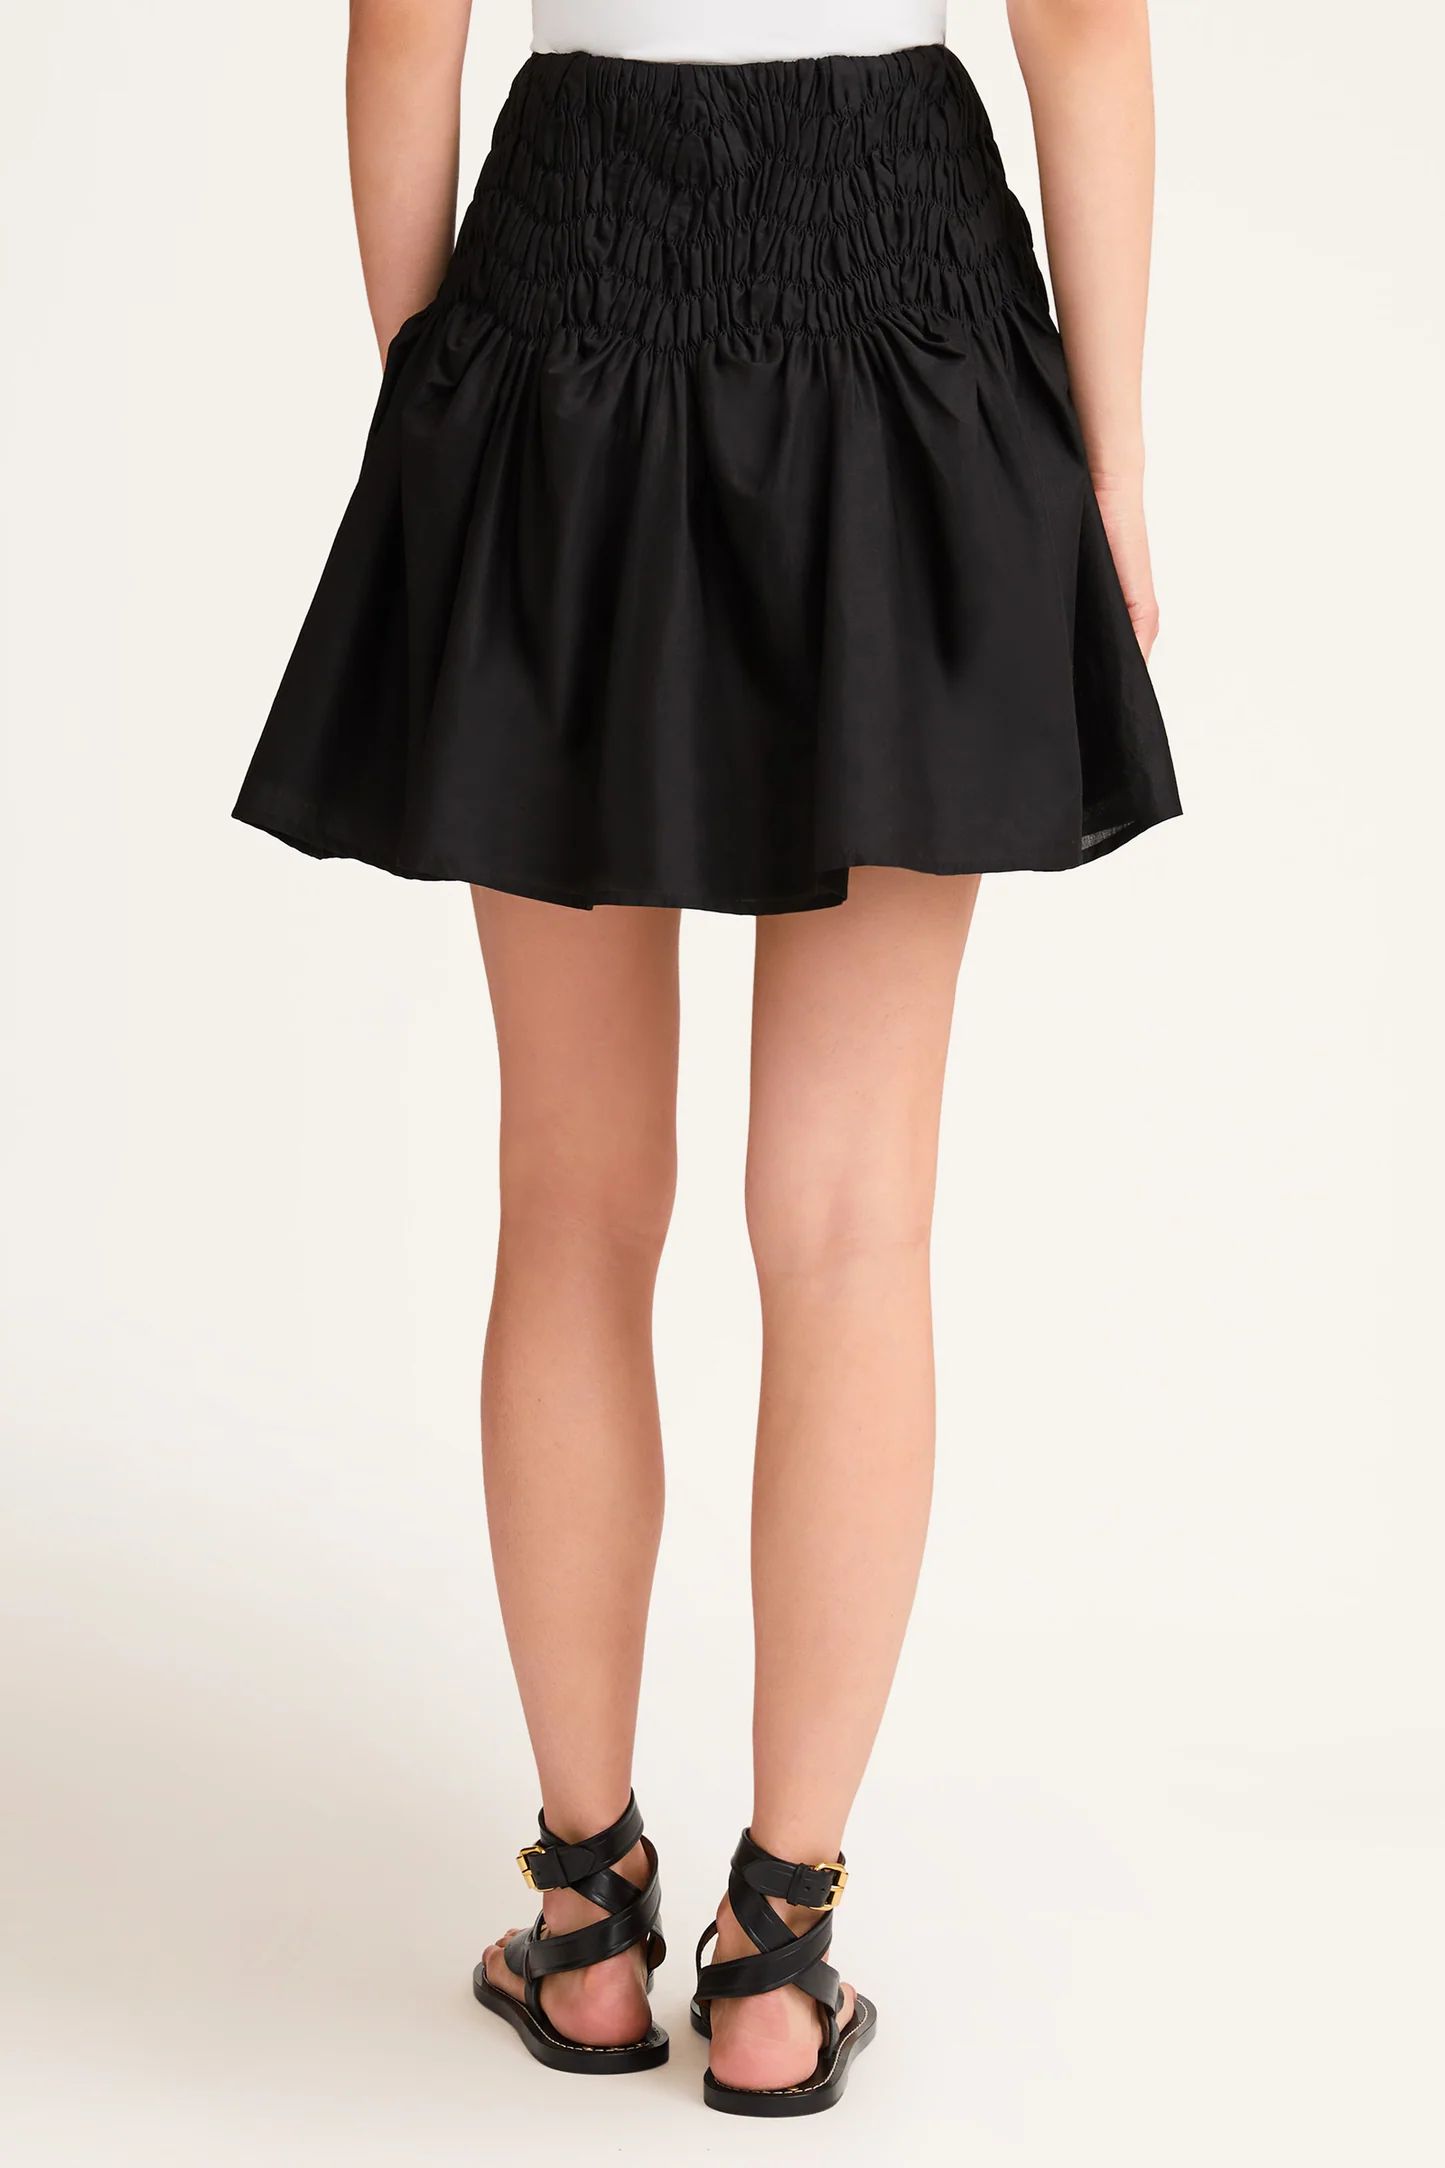 Elysian Skirt in Black | Merlette NYC